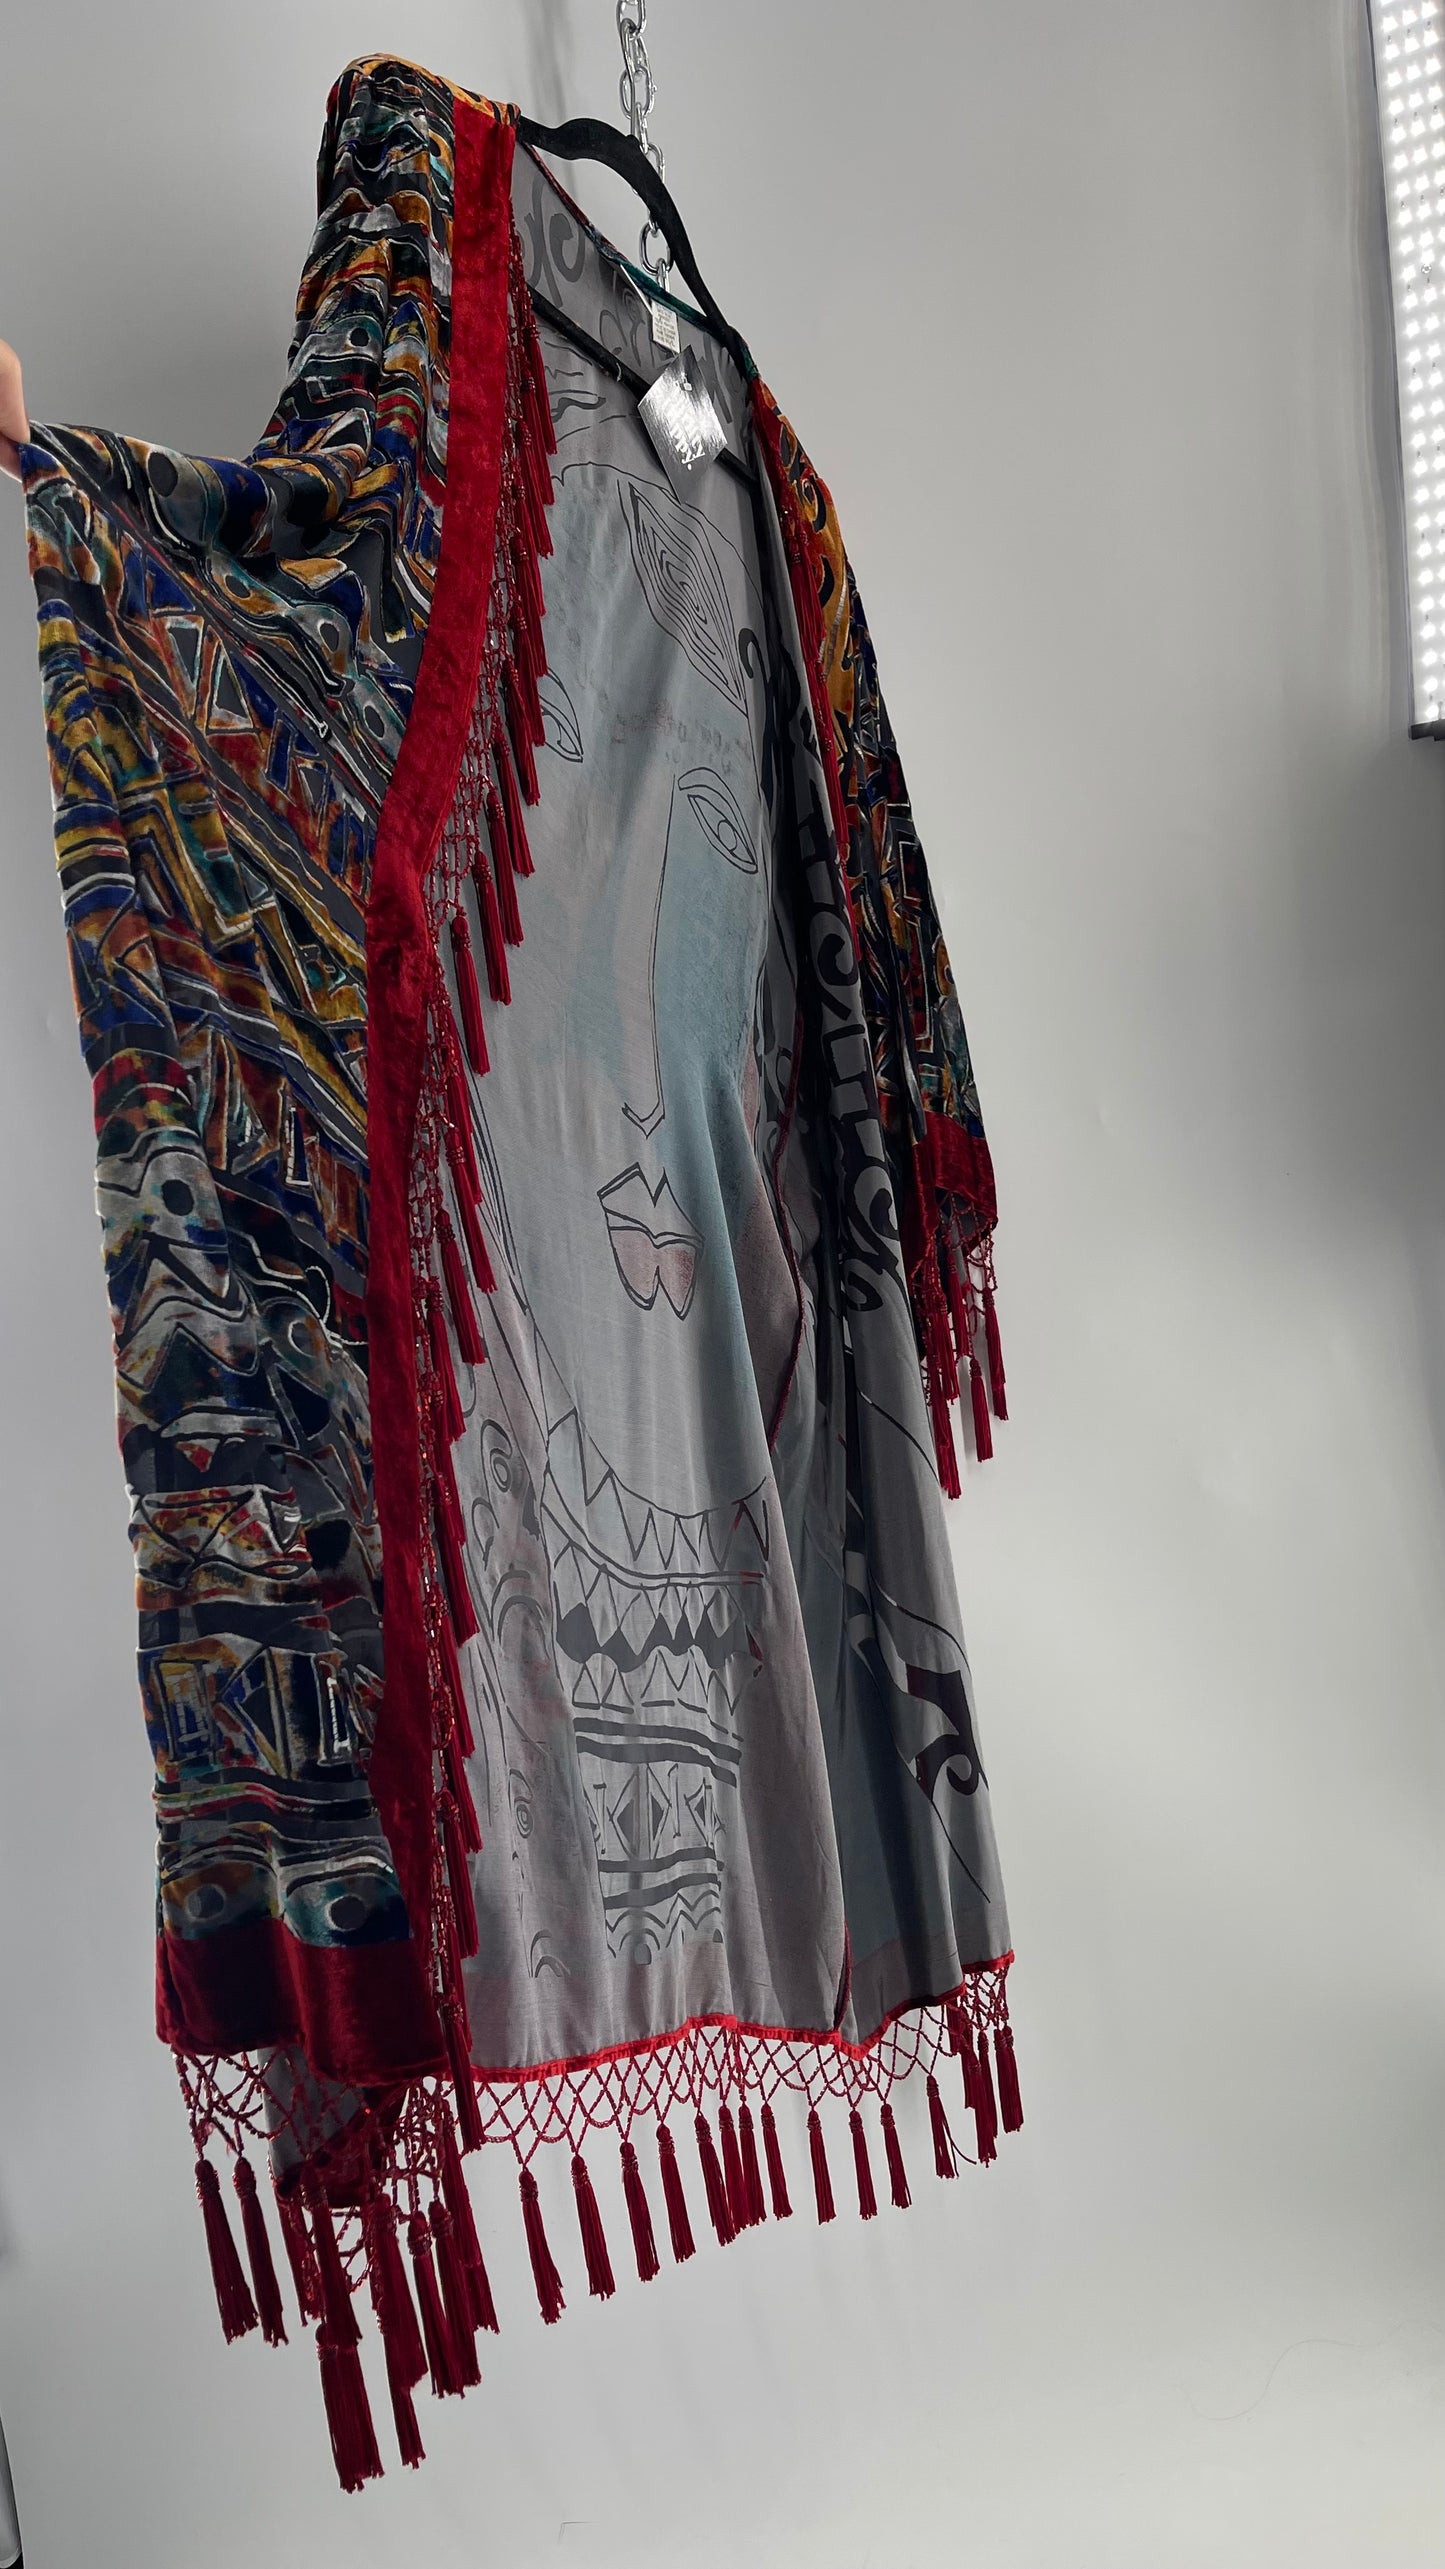 Vintage Burnout Buddhist Motif Velvet/Velour Beaded Fringe Duster Coat/Kimono with Tassel Sleeves and Hems (M/L)